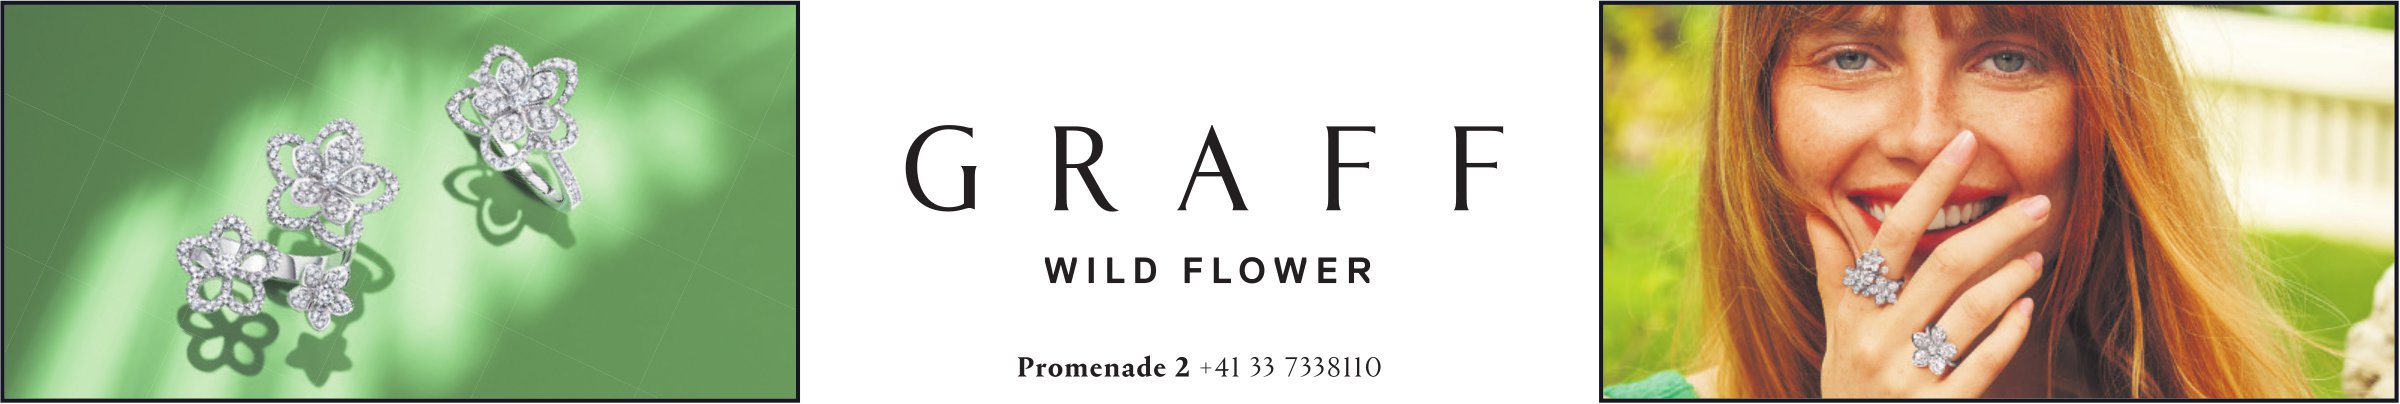 Graff, Gstaad - Wild Flower